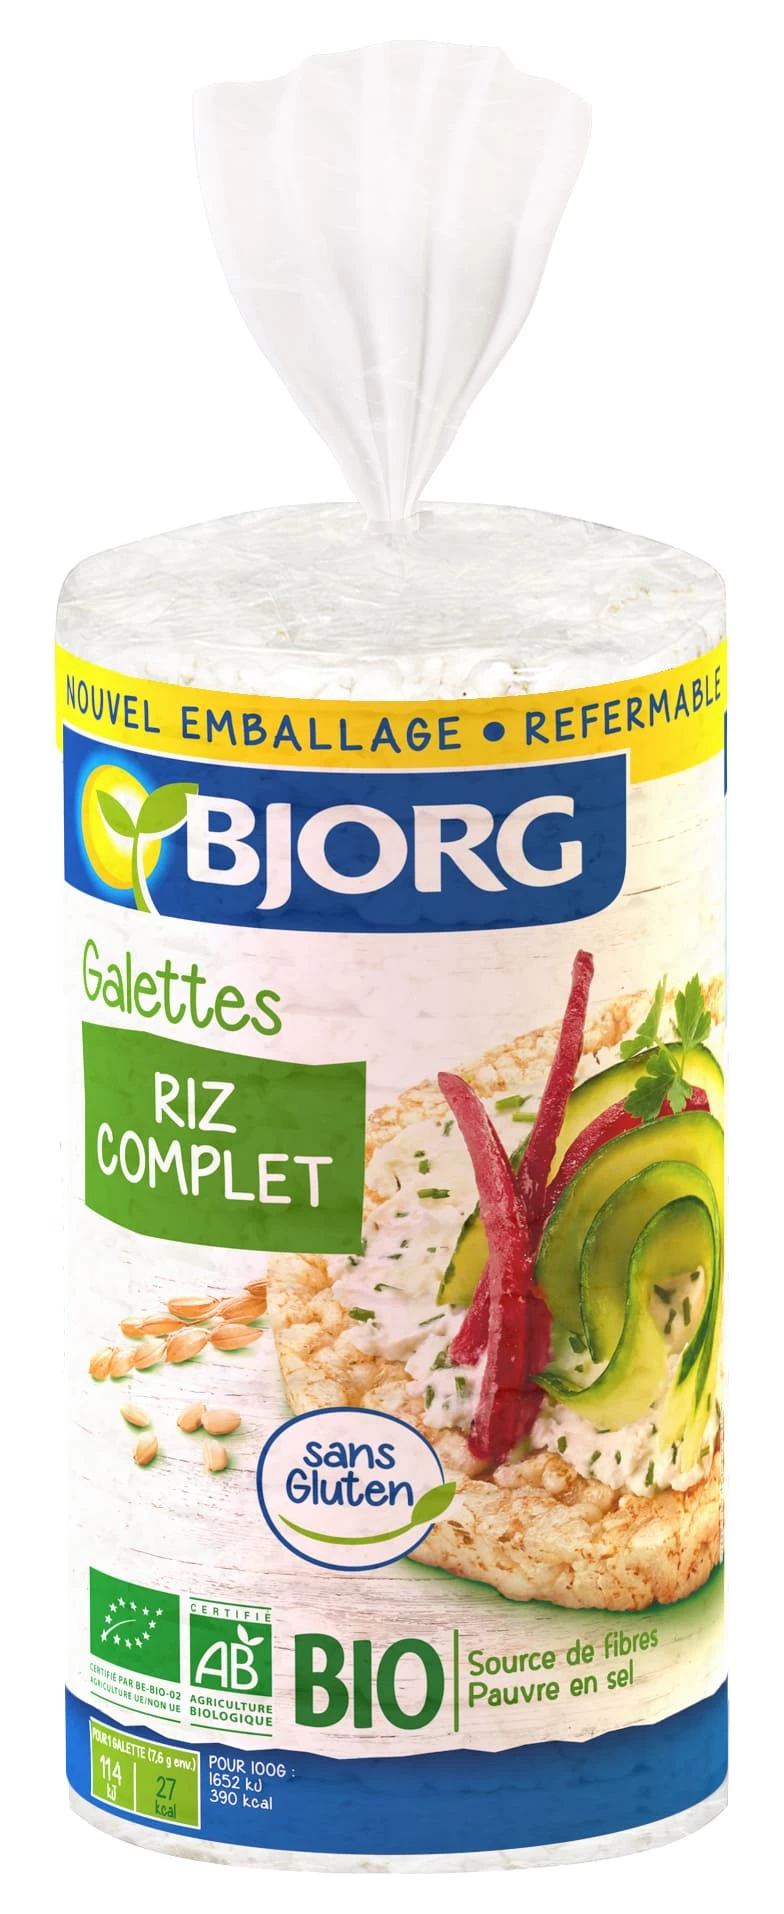 Bánh gạo lứt hữu cơ 130g - BJORG